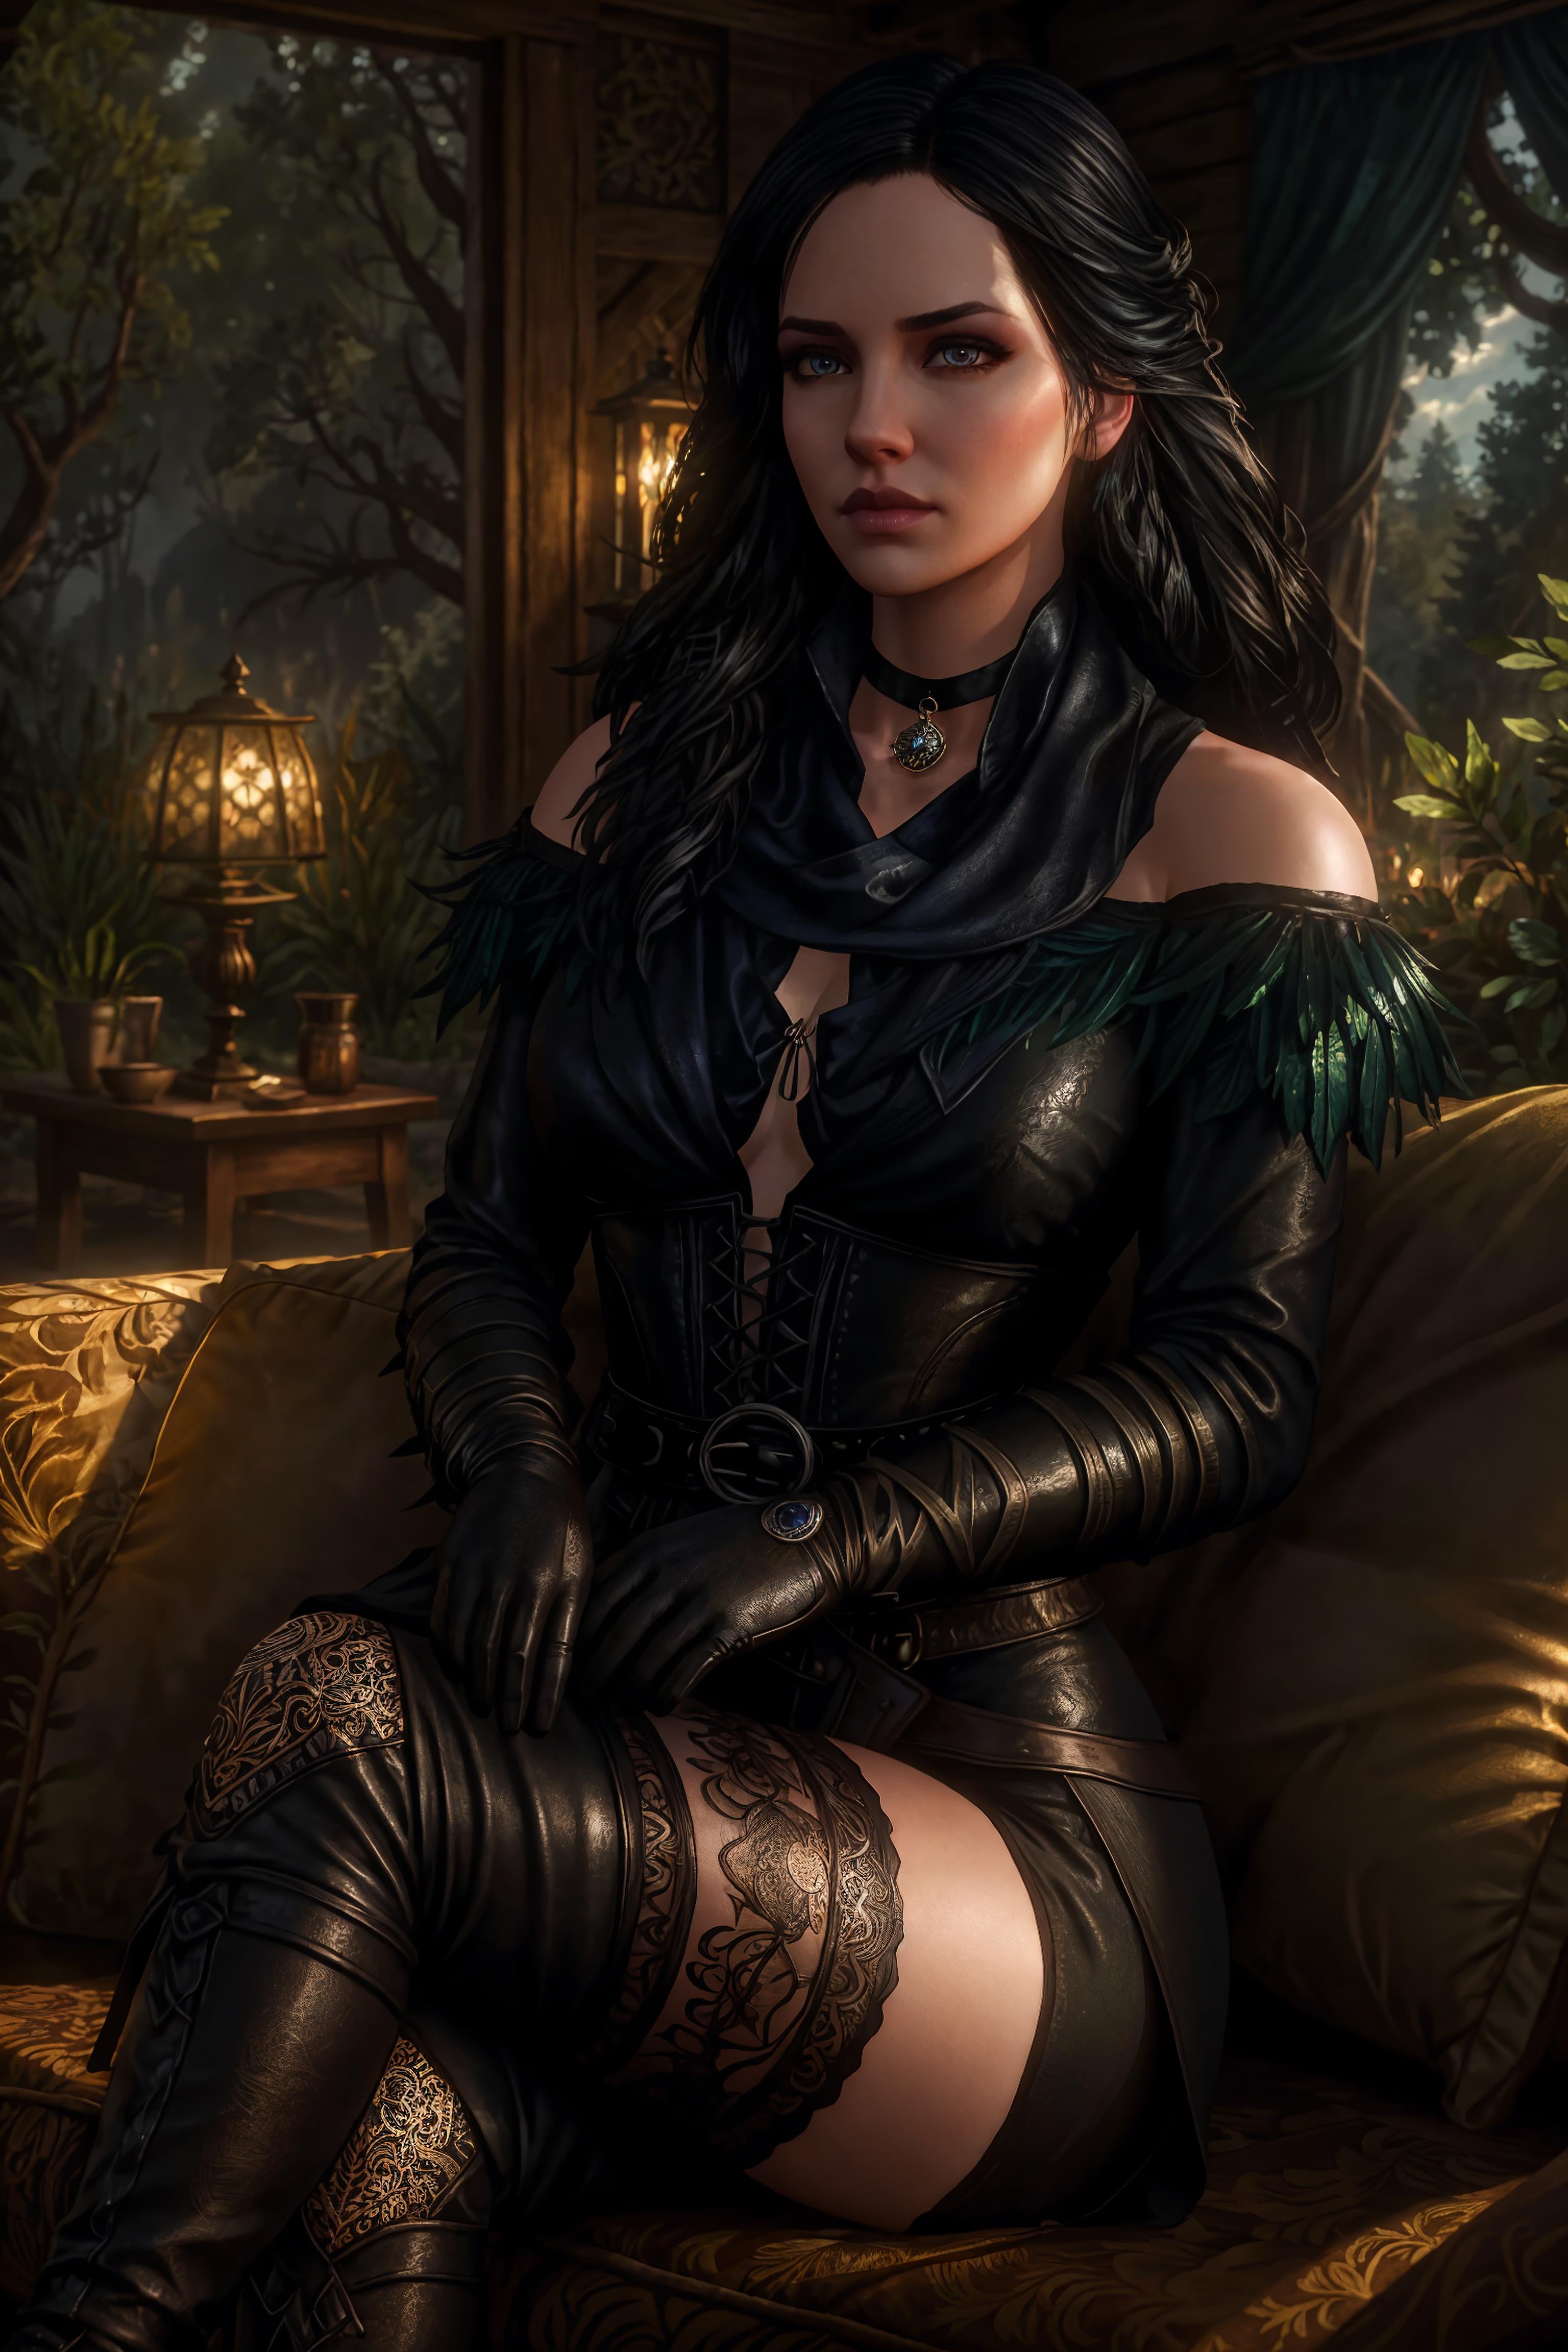 Yennefer of Vengerberg (Witcher 3) LoRA image by Taloji